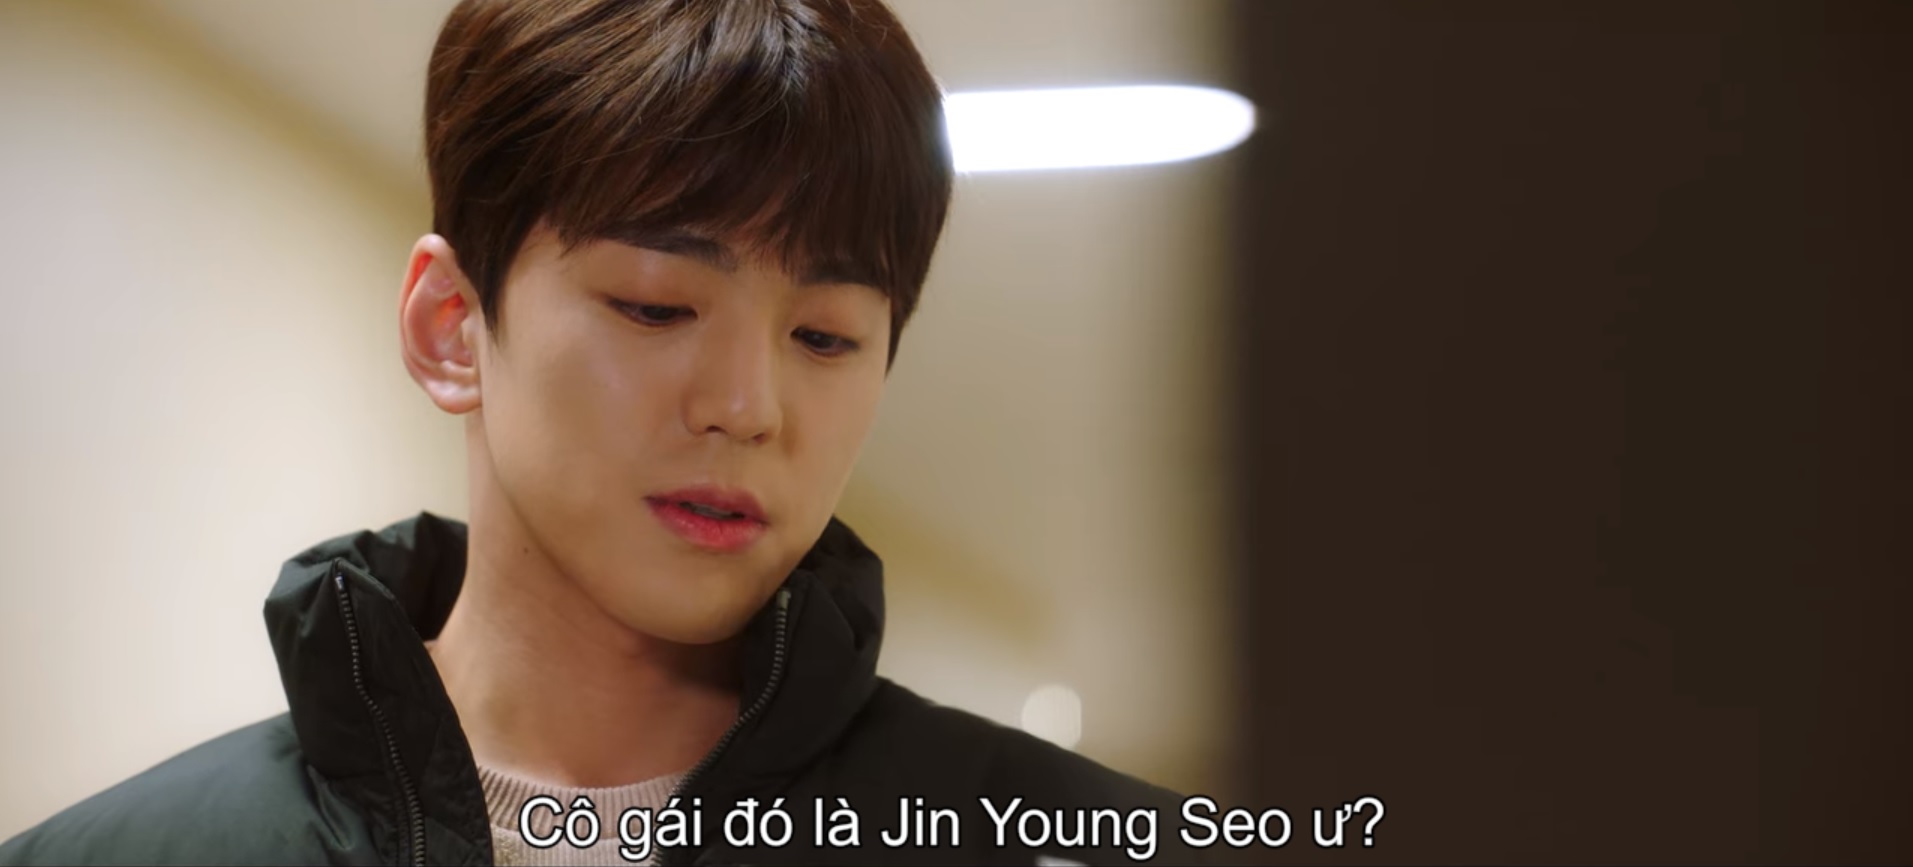 Hẹn hò chốn công sở: Hành trình tình yêu của Young Seo và Sung Hoon sau nửa chặng đường - Ảnh 4.